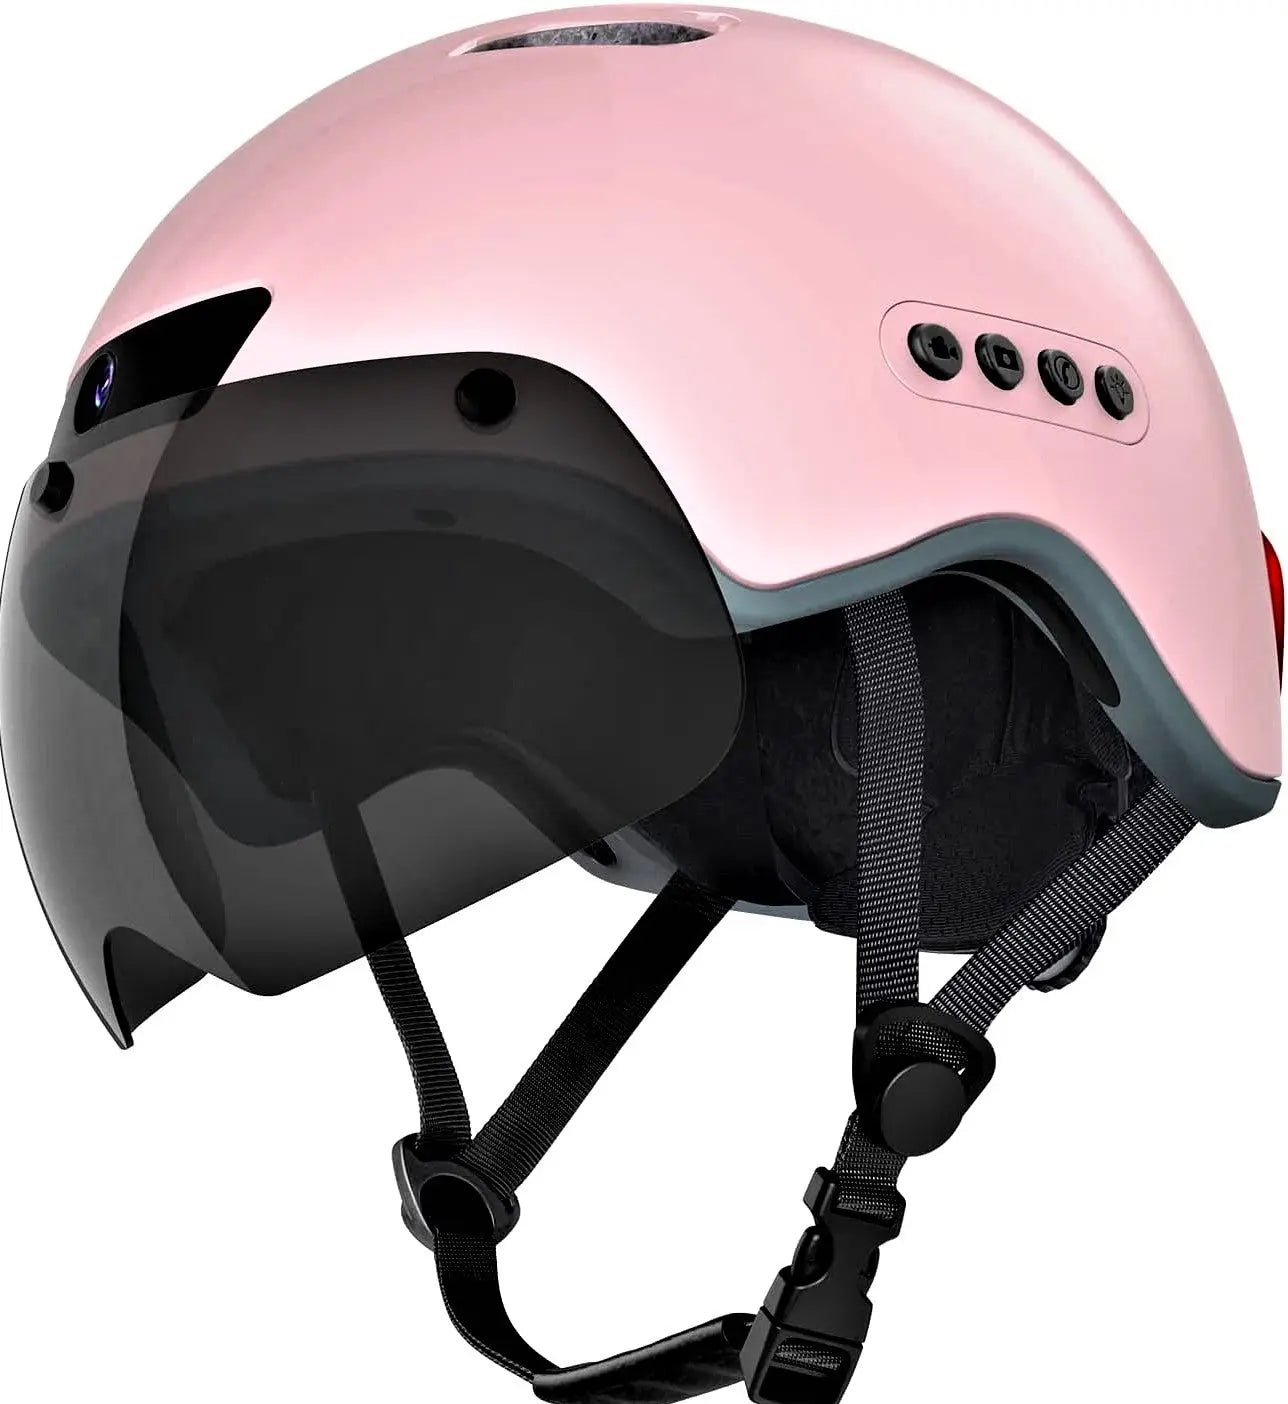 Acheter un casque vélo connecté avec visière pour plus de sécurité | Casque vélo Okem